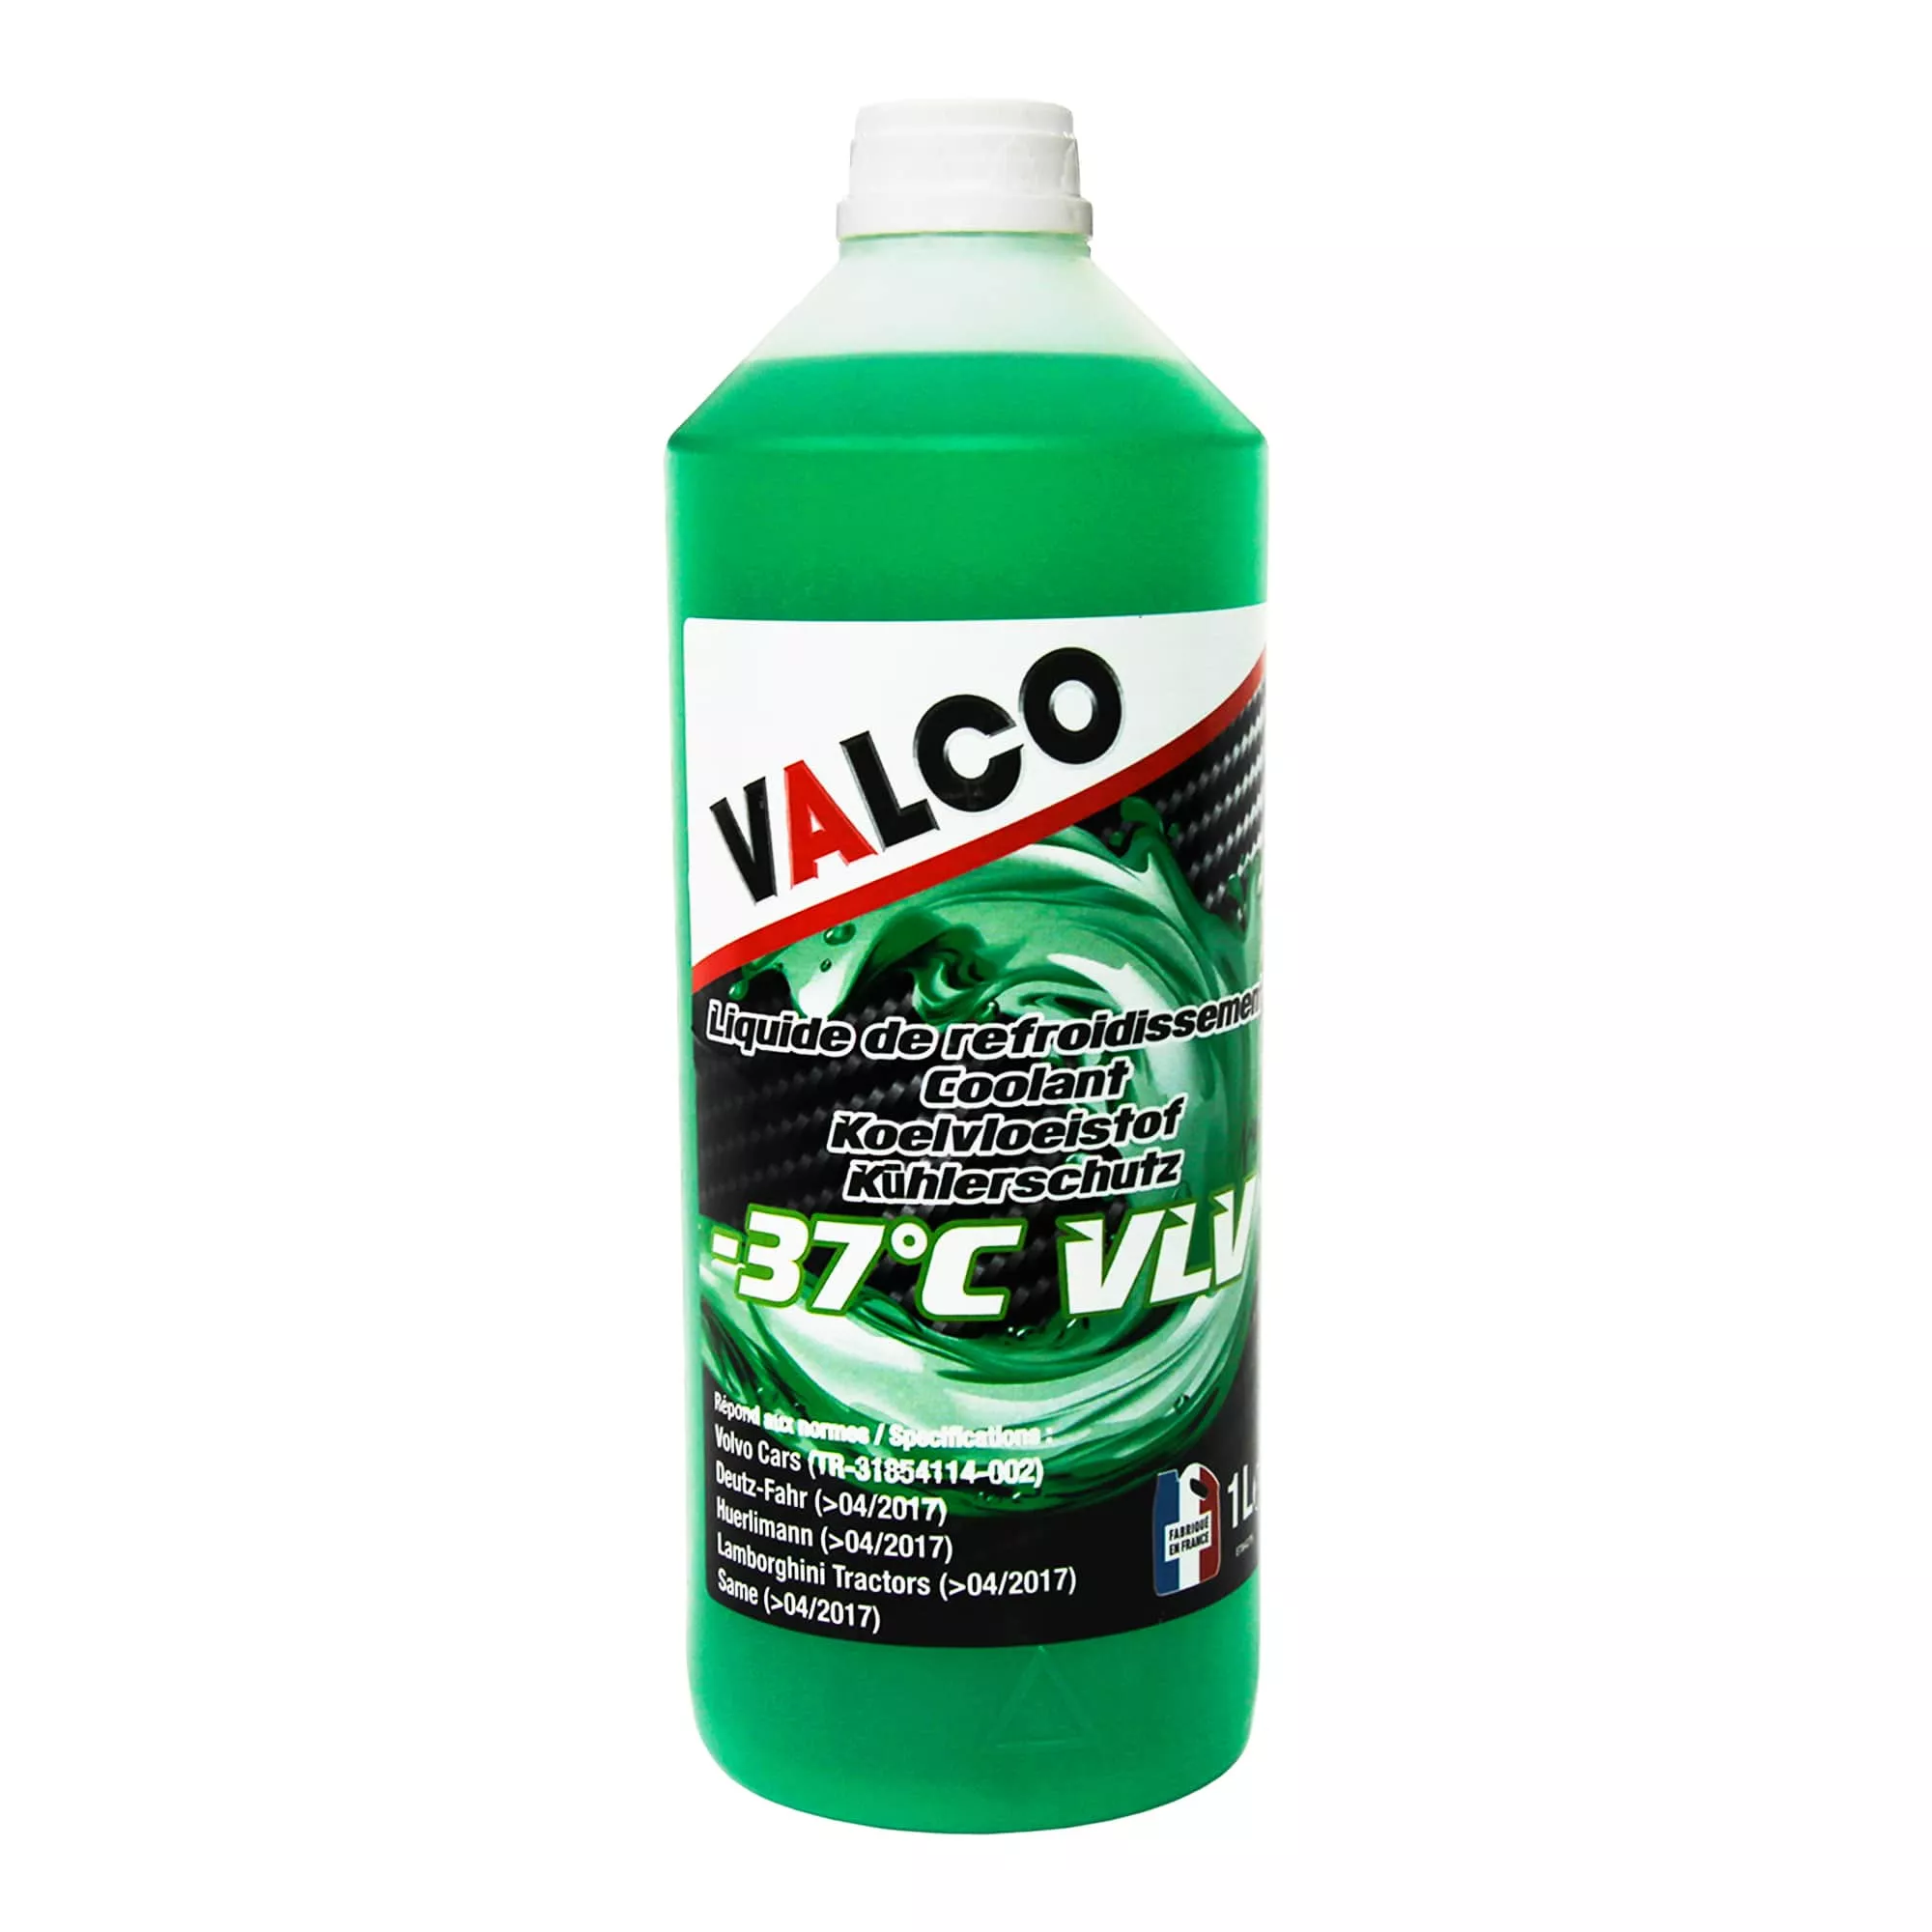 Антифриз Valco LR VLV Vert G11 -37°C зеленый 1л (607437)